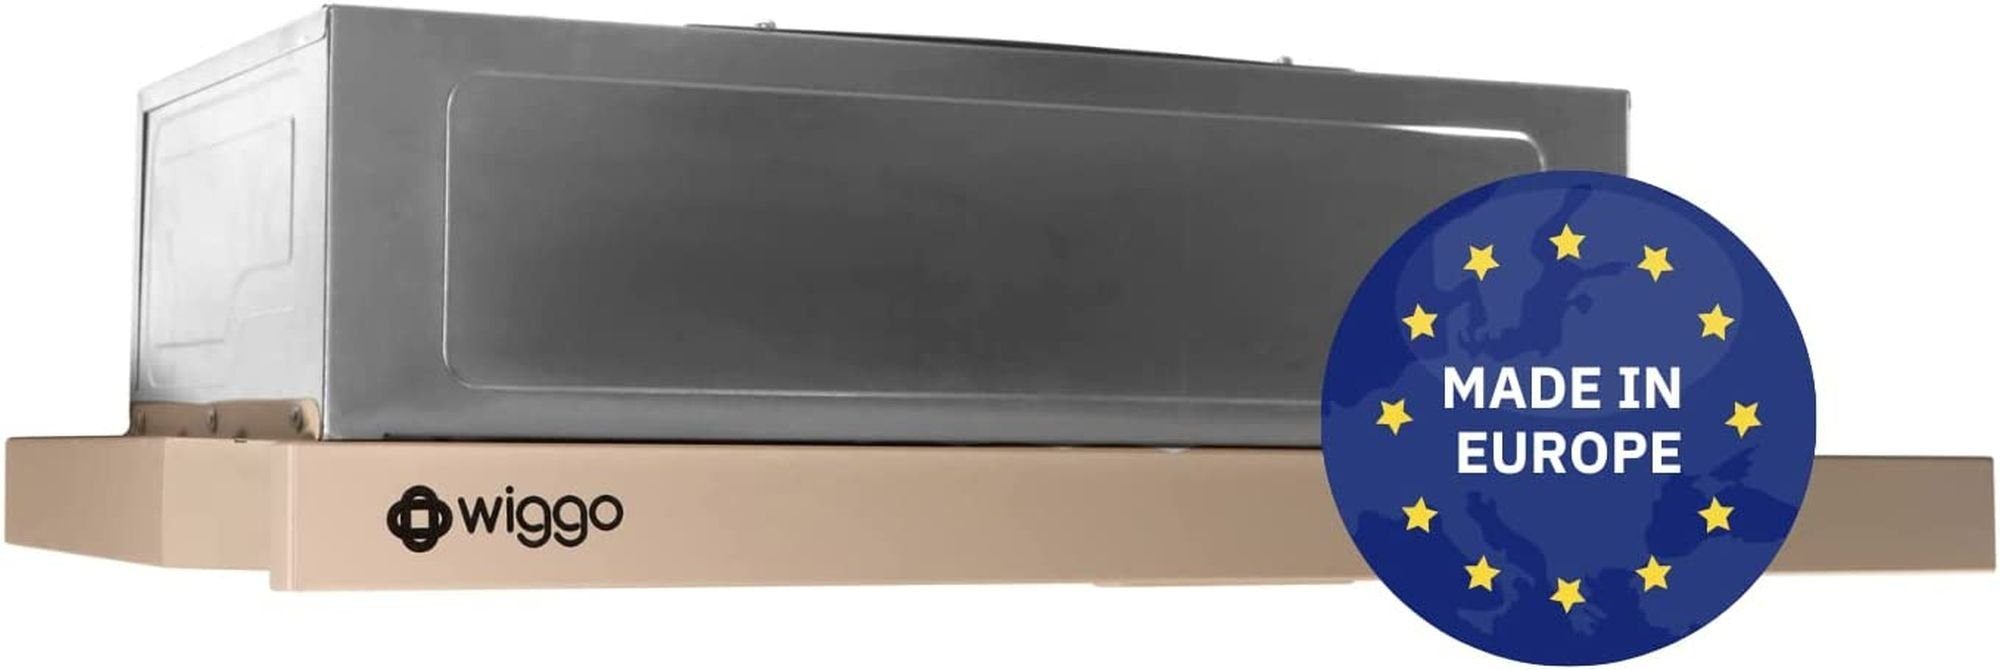 wiggo Flachschirmhaube WE-E632ER Unterbauhaube 60 cm - creme, für Abluft oder Umluft Dunstabzug 300m³/h mit LED-Beleuchtung